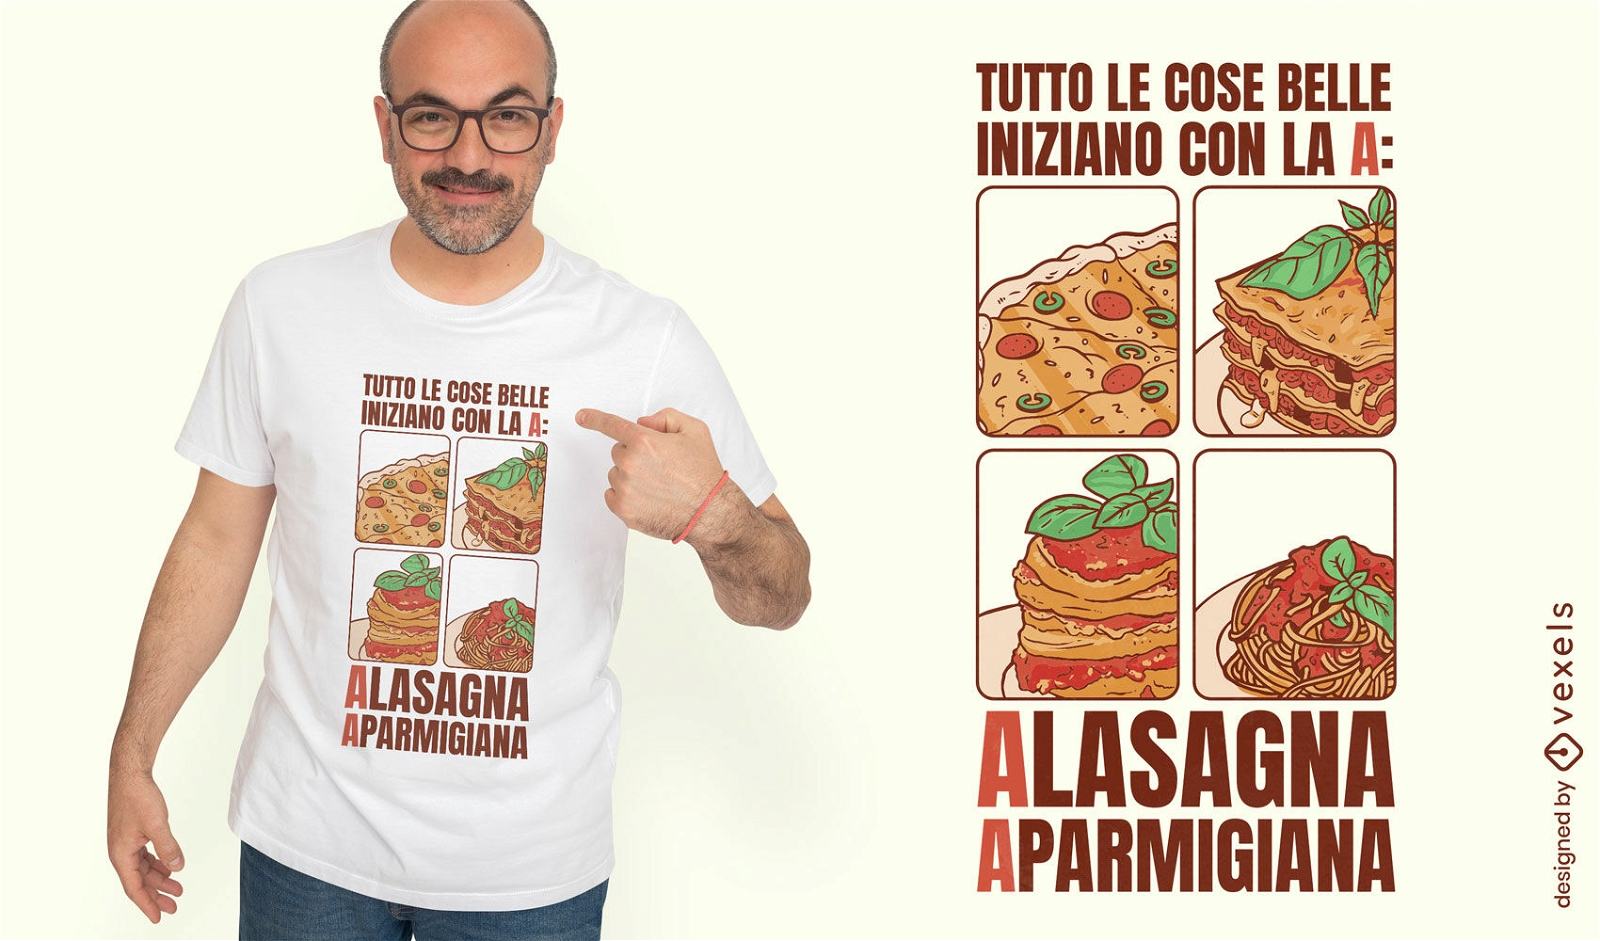 Design de camiseta com citação de comida italiana